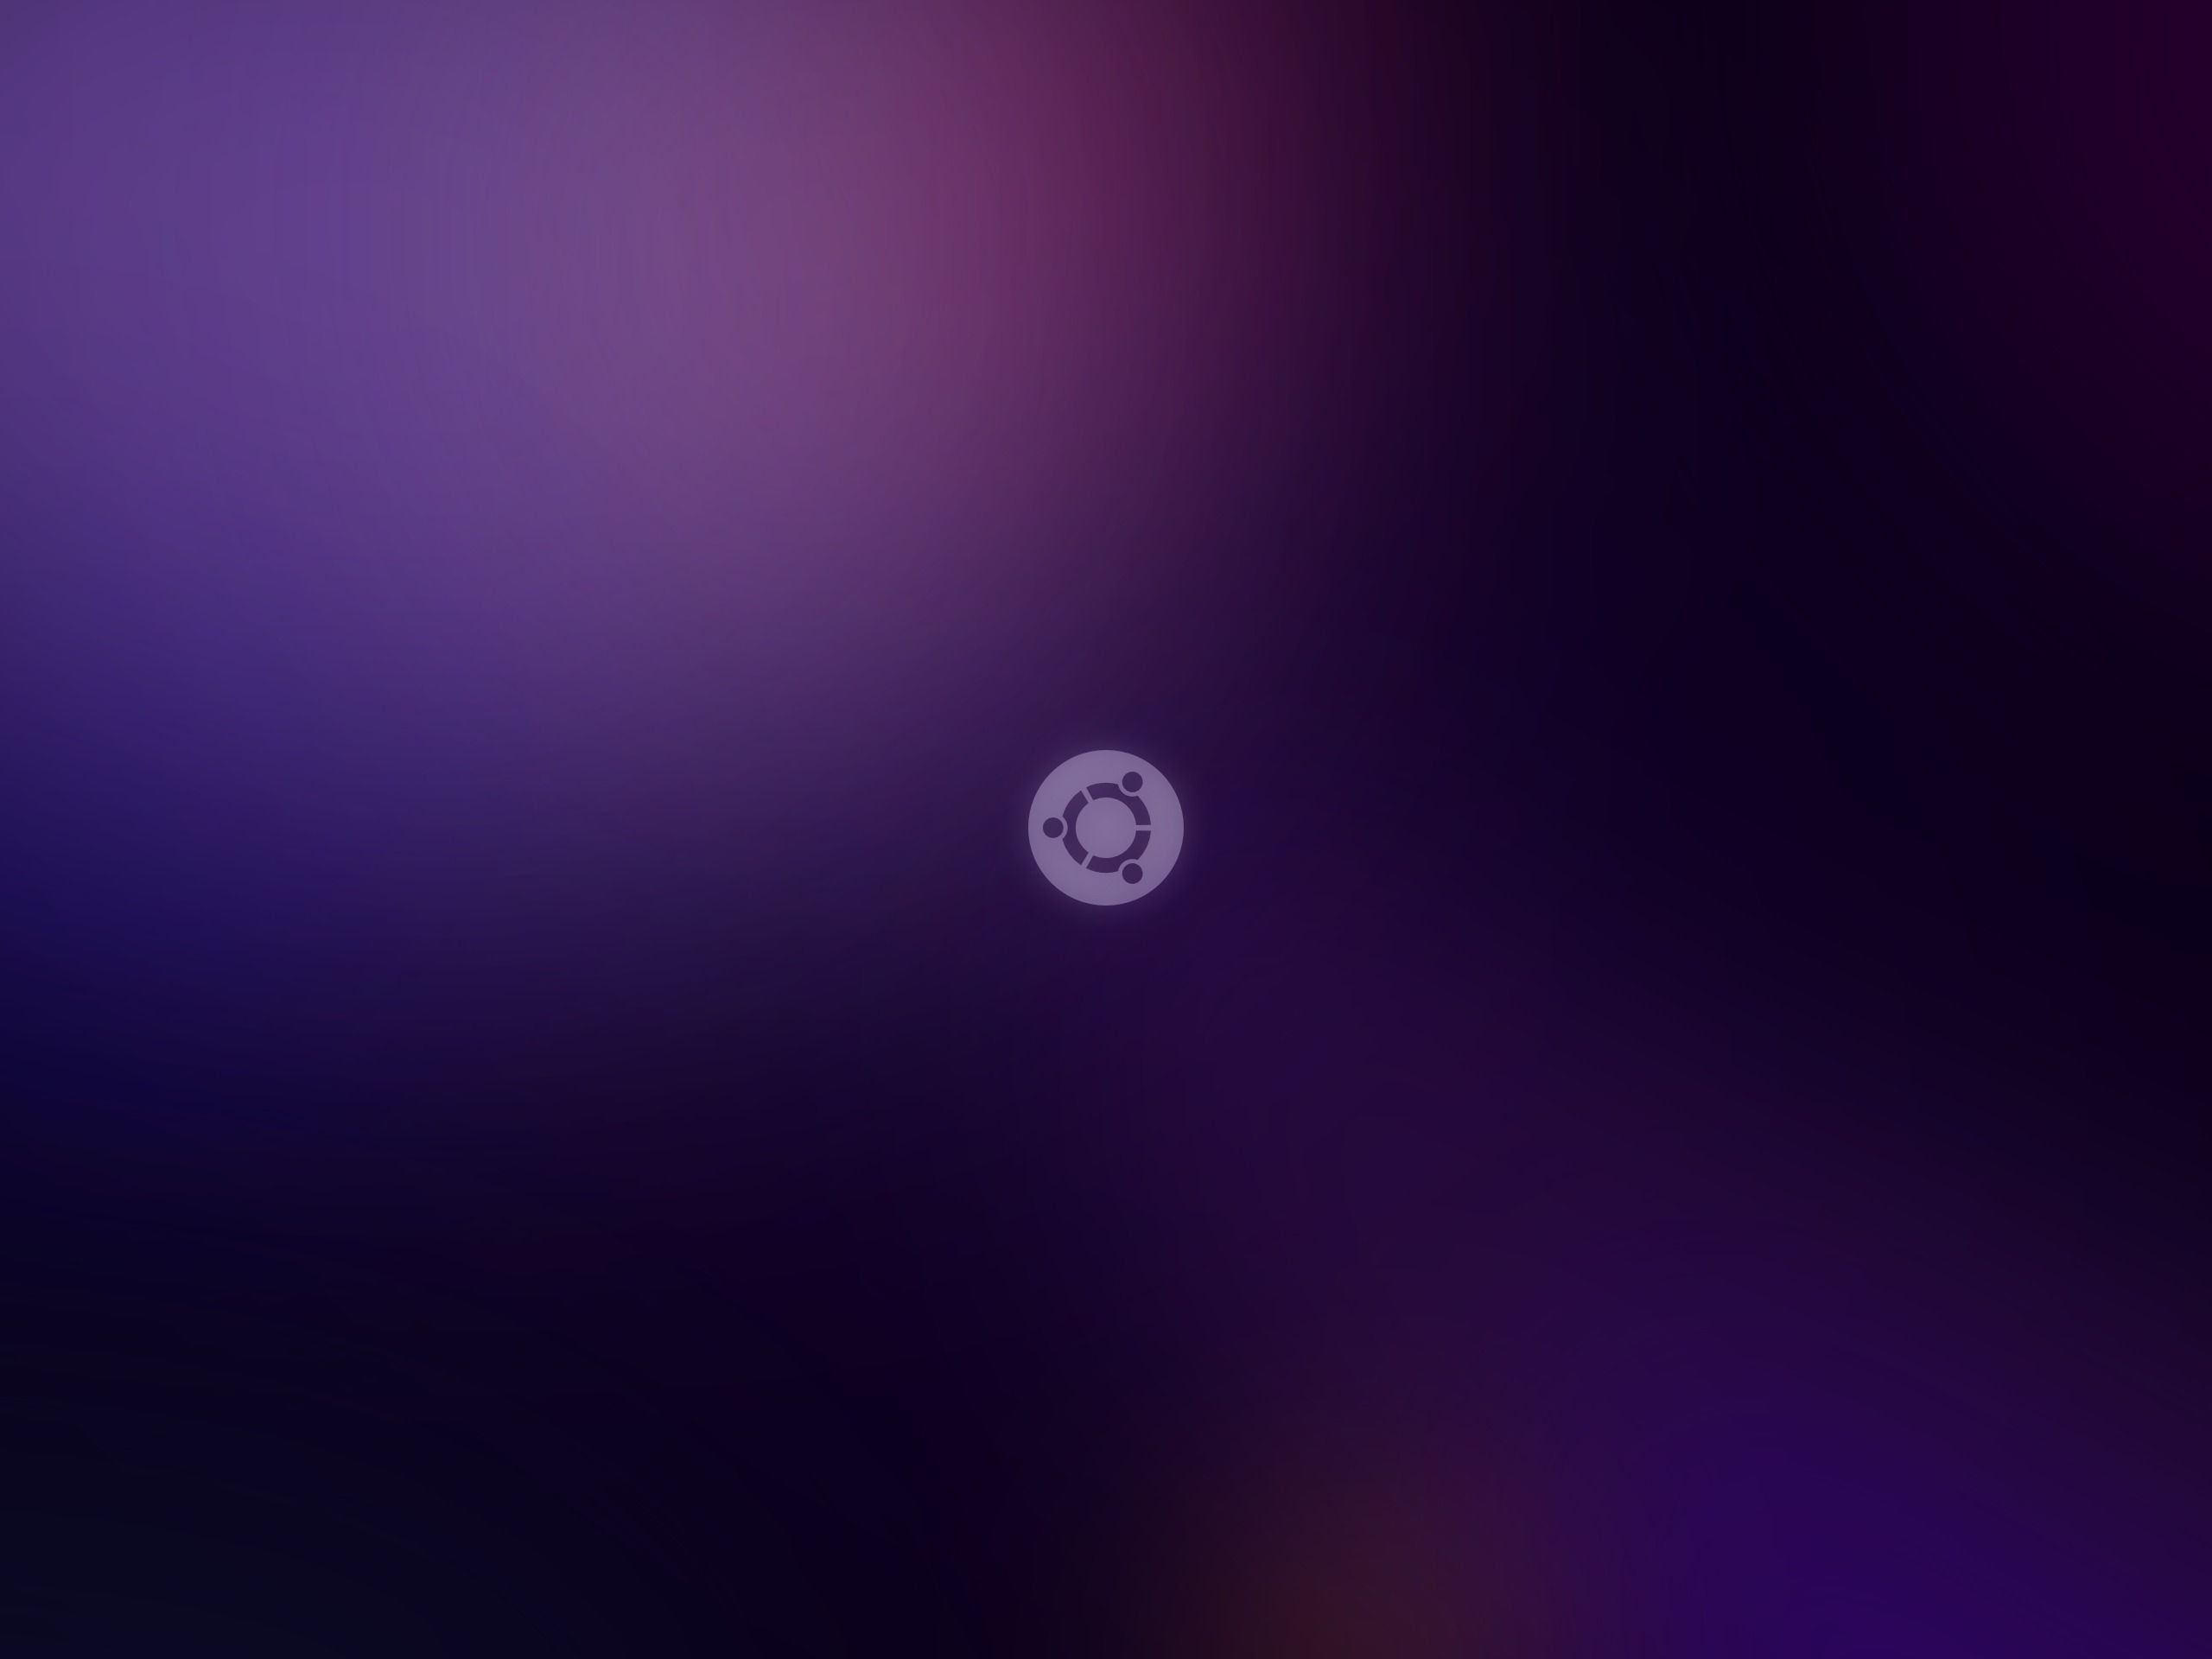 HD wallpaper, Simple, Wallpaper, Ubuntu